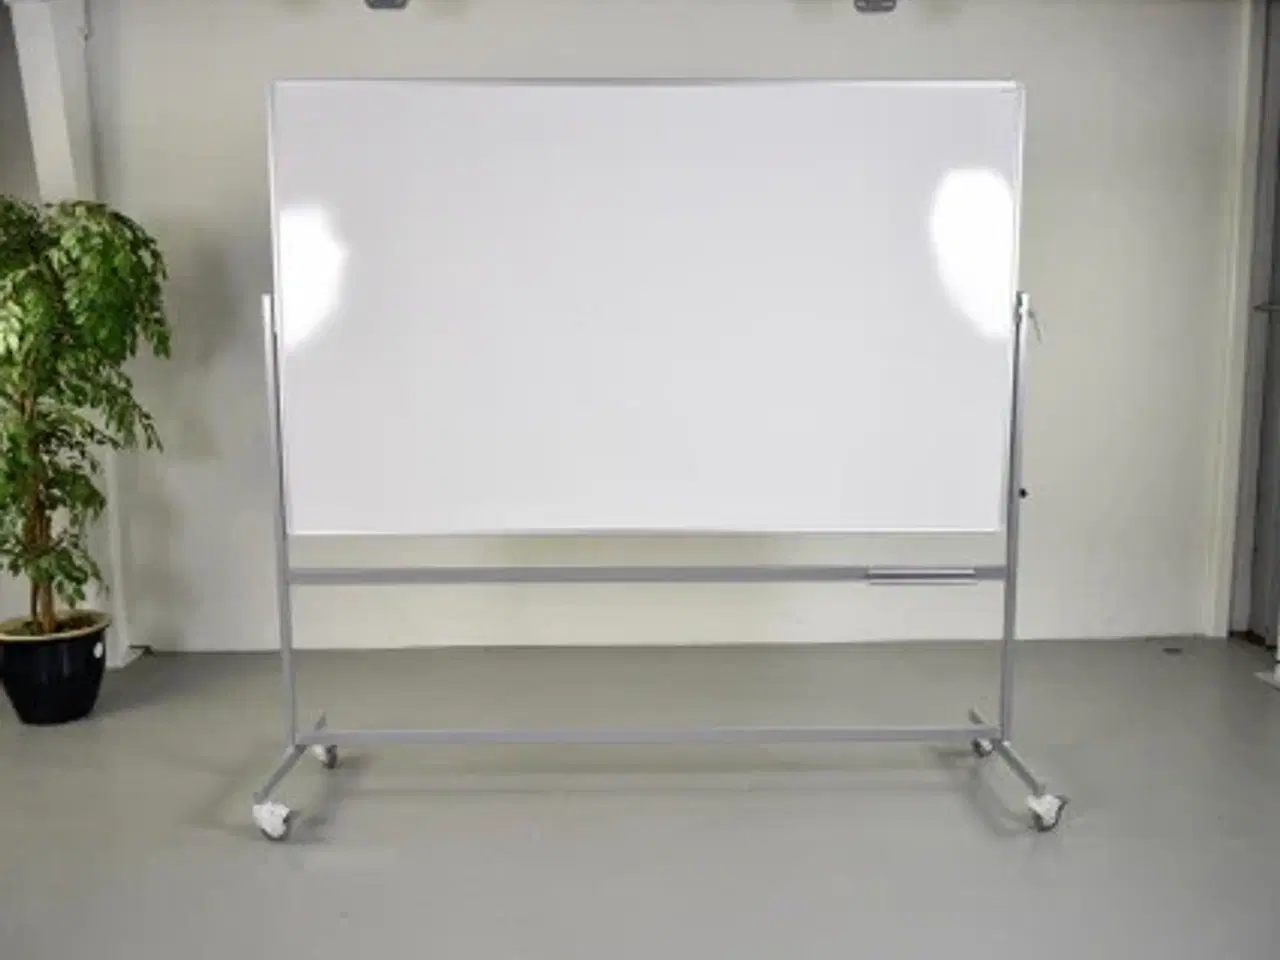 Billede 1 - Vanerum dobbeltsidet whiteboard svingtavle på hjul